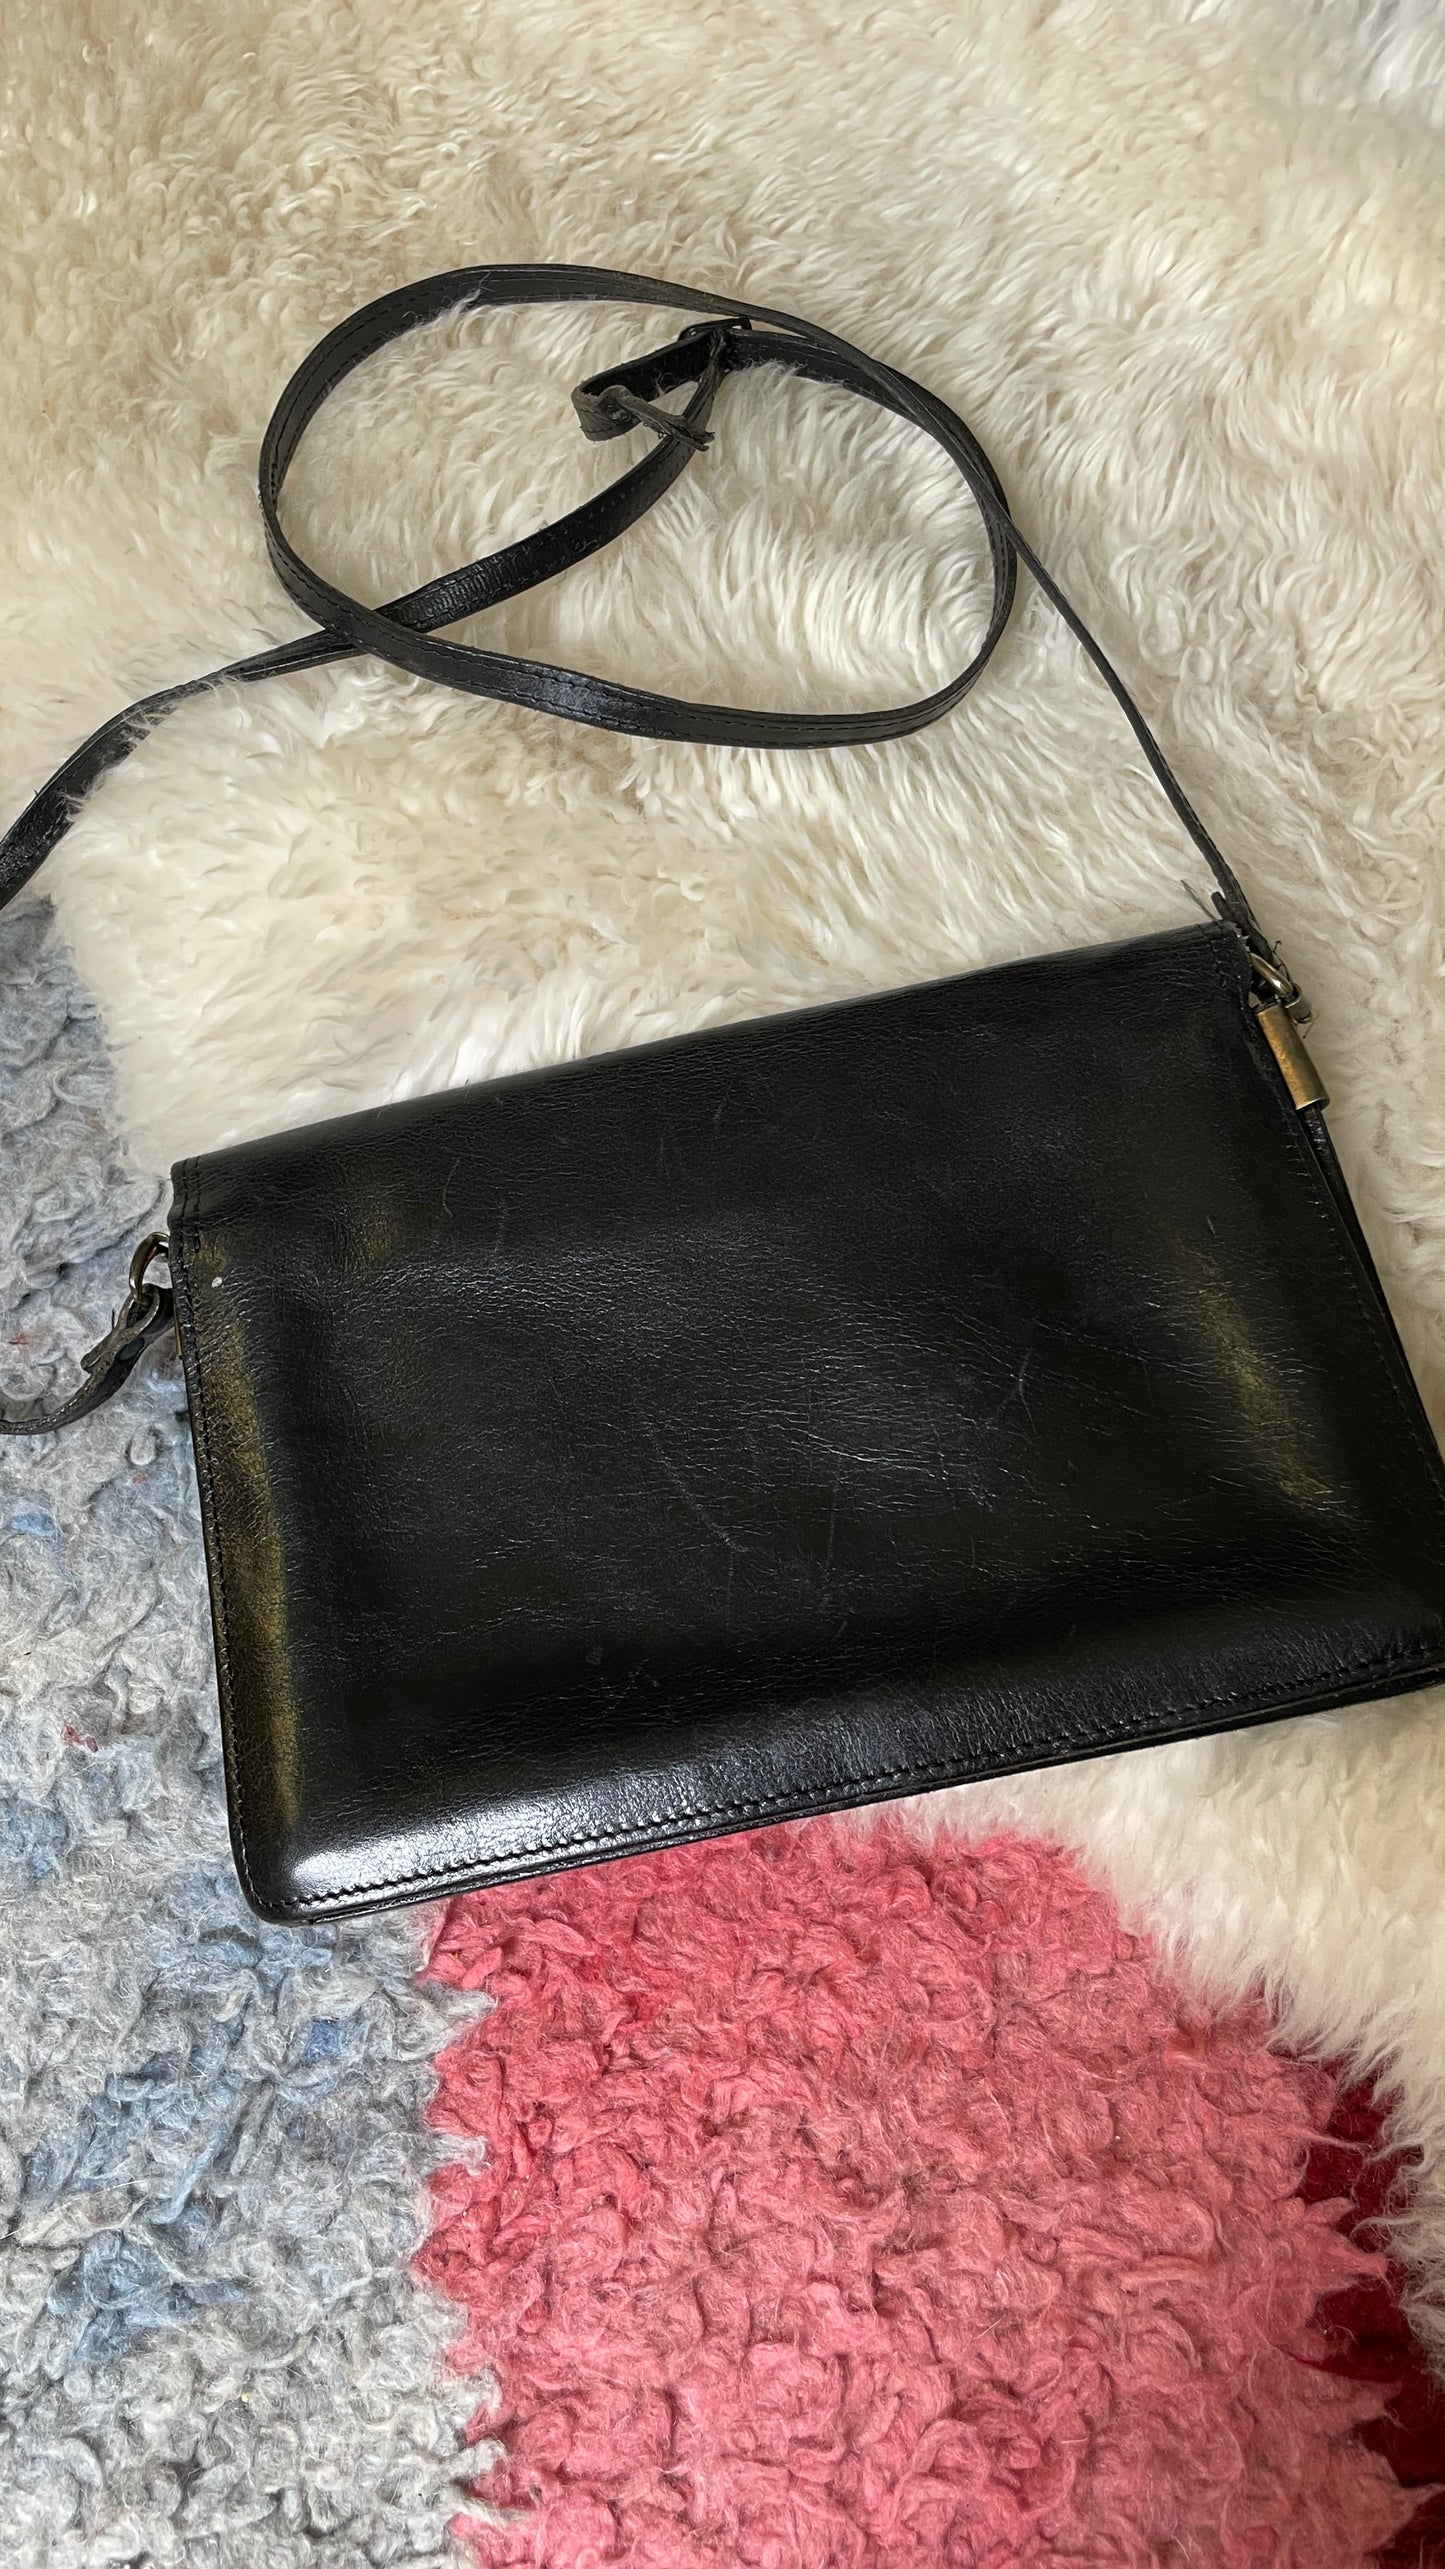 Basic leather purse